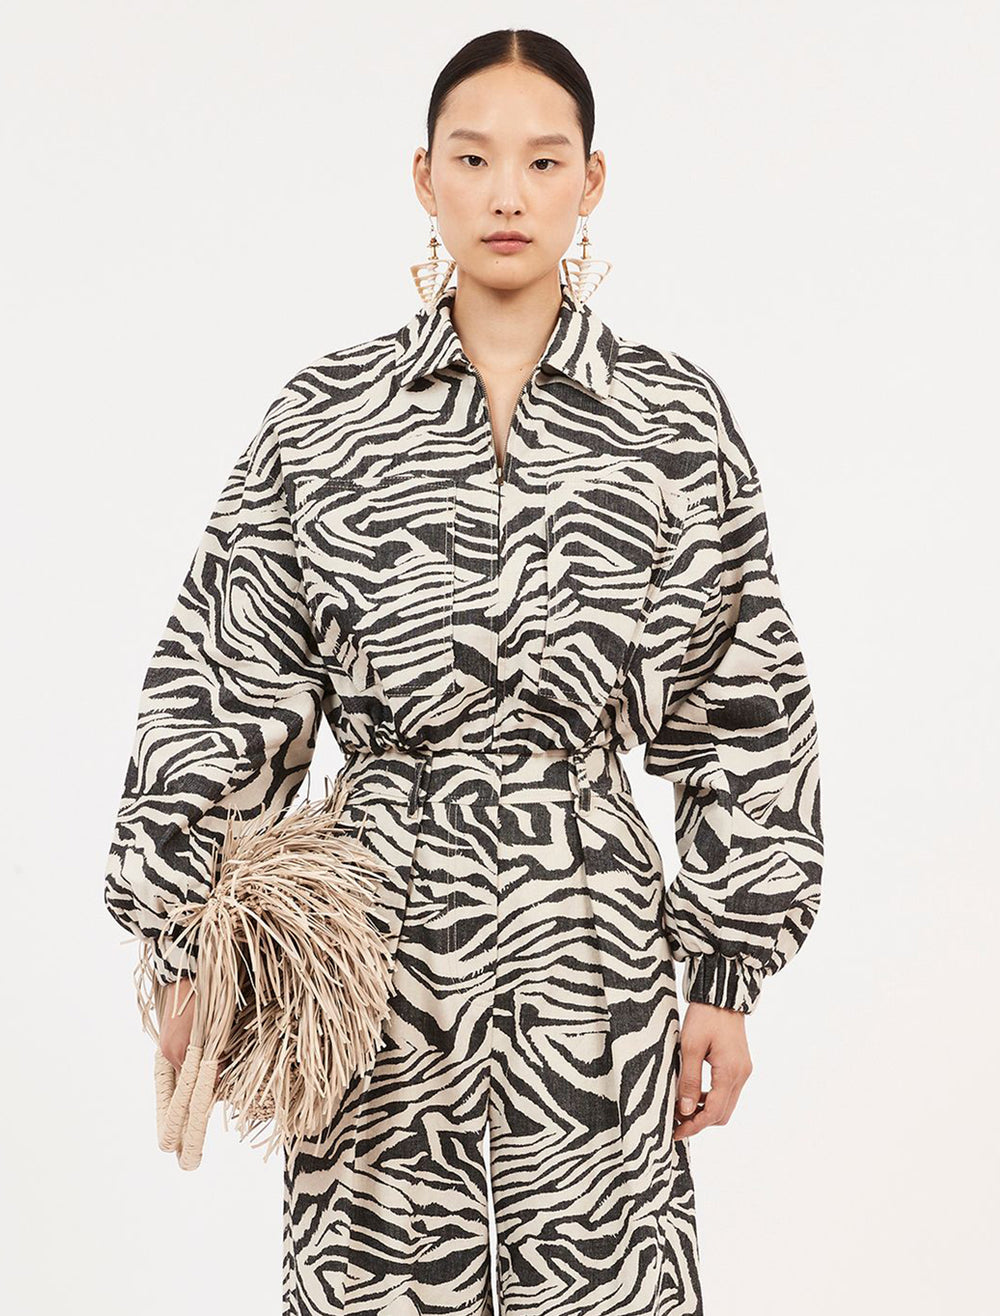 Model wearing Ulla Johnson's Ariele Jacket in Zebra.